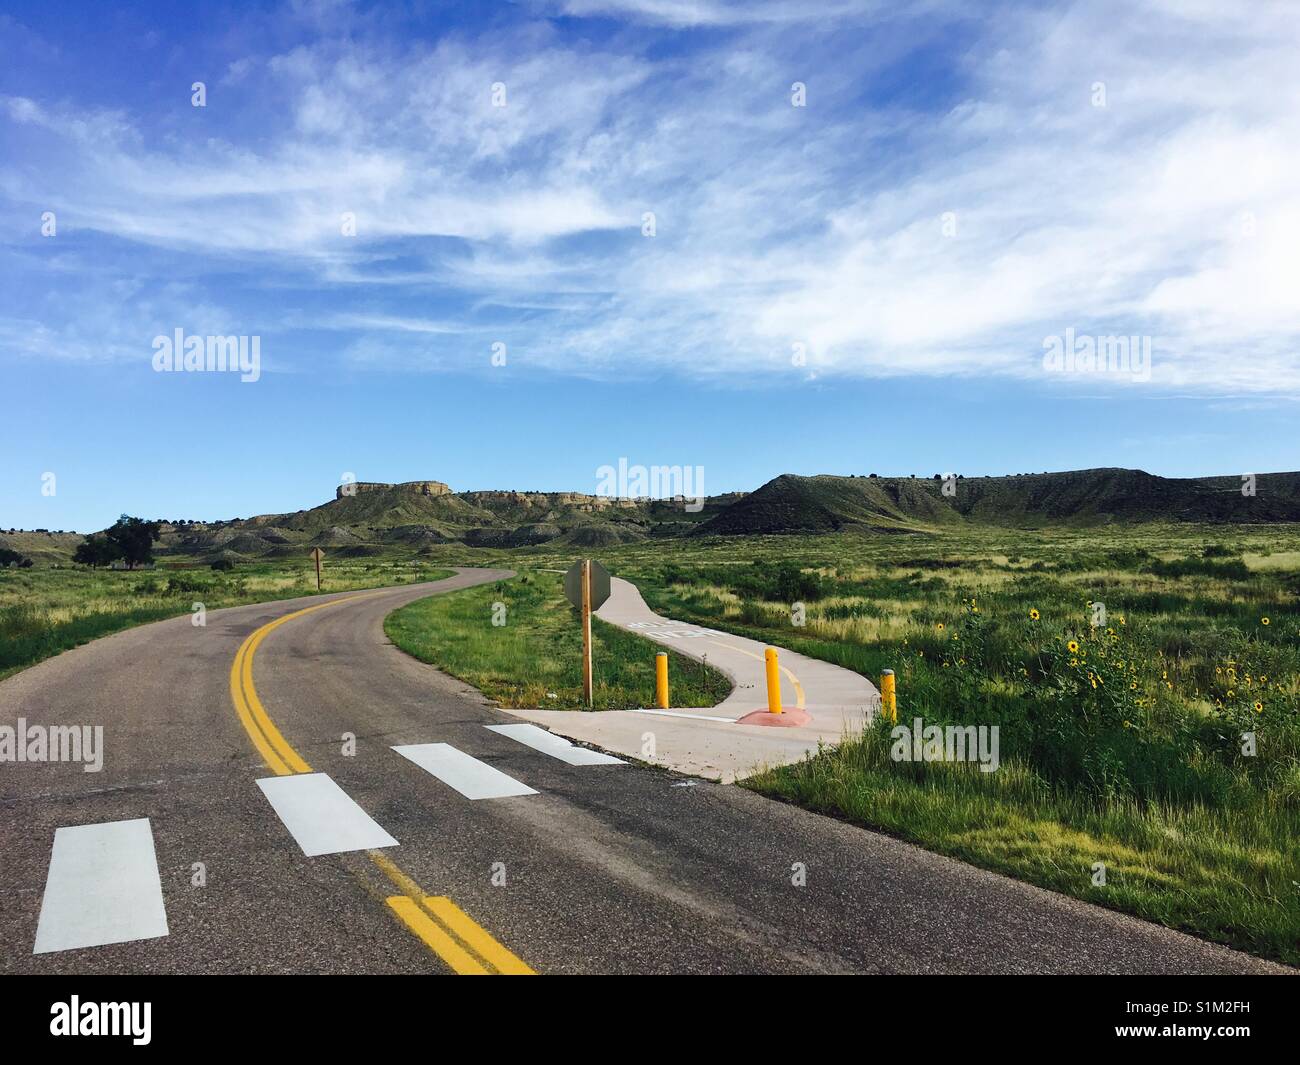 Road to nowhere, Pueblo, Colorado Stock Photo